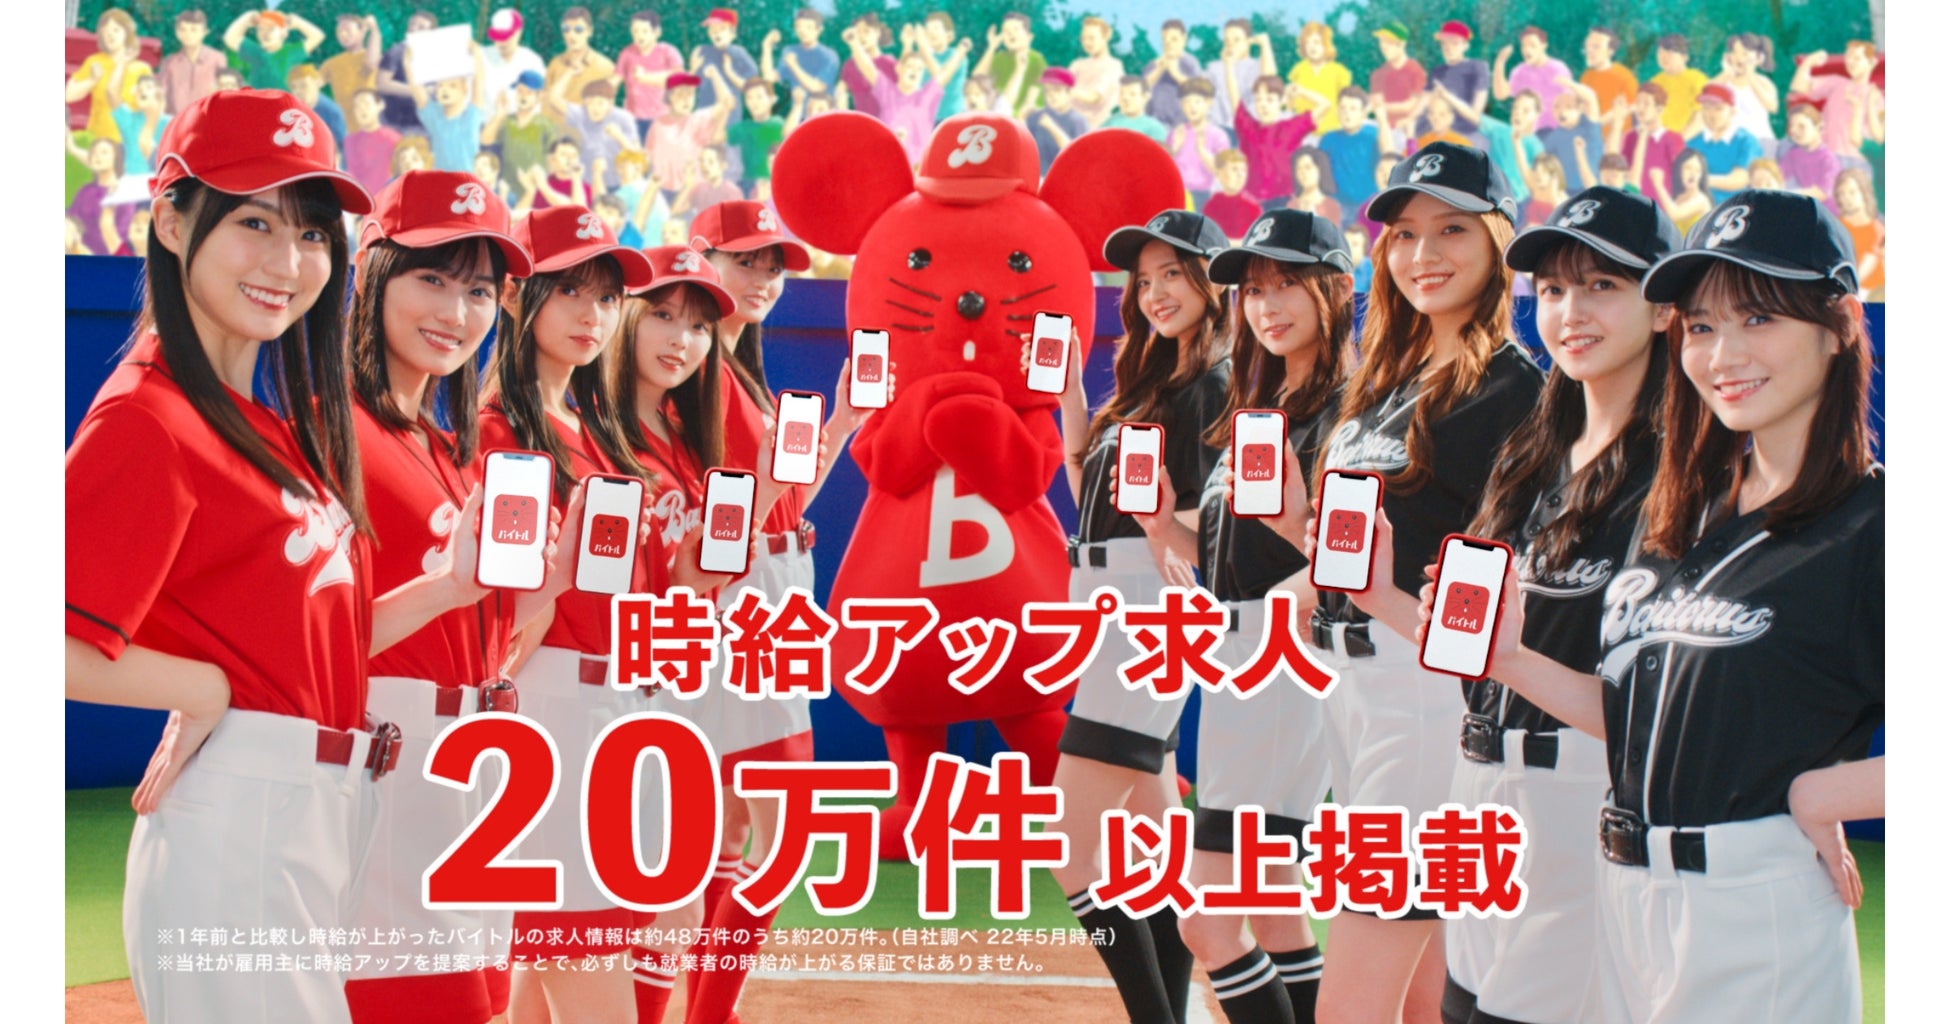 マツケンブーム再来！東京で大盛況の人気イベントが東海初登場！「マツケンサンバ POP UP SHOP」